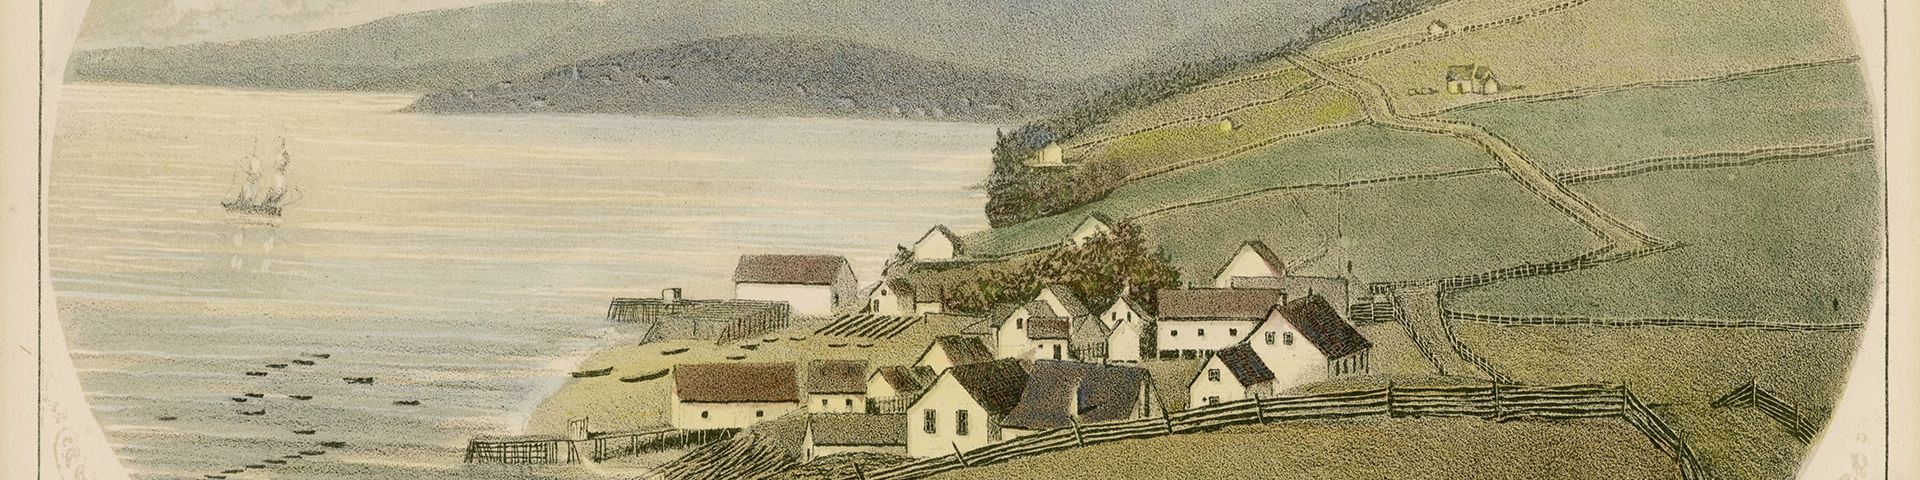 Print by Thomas Pye showing a fishing village.